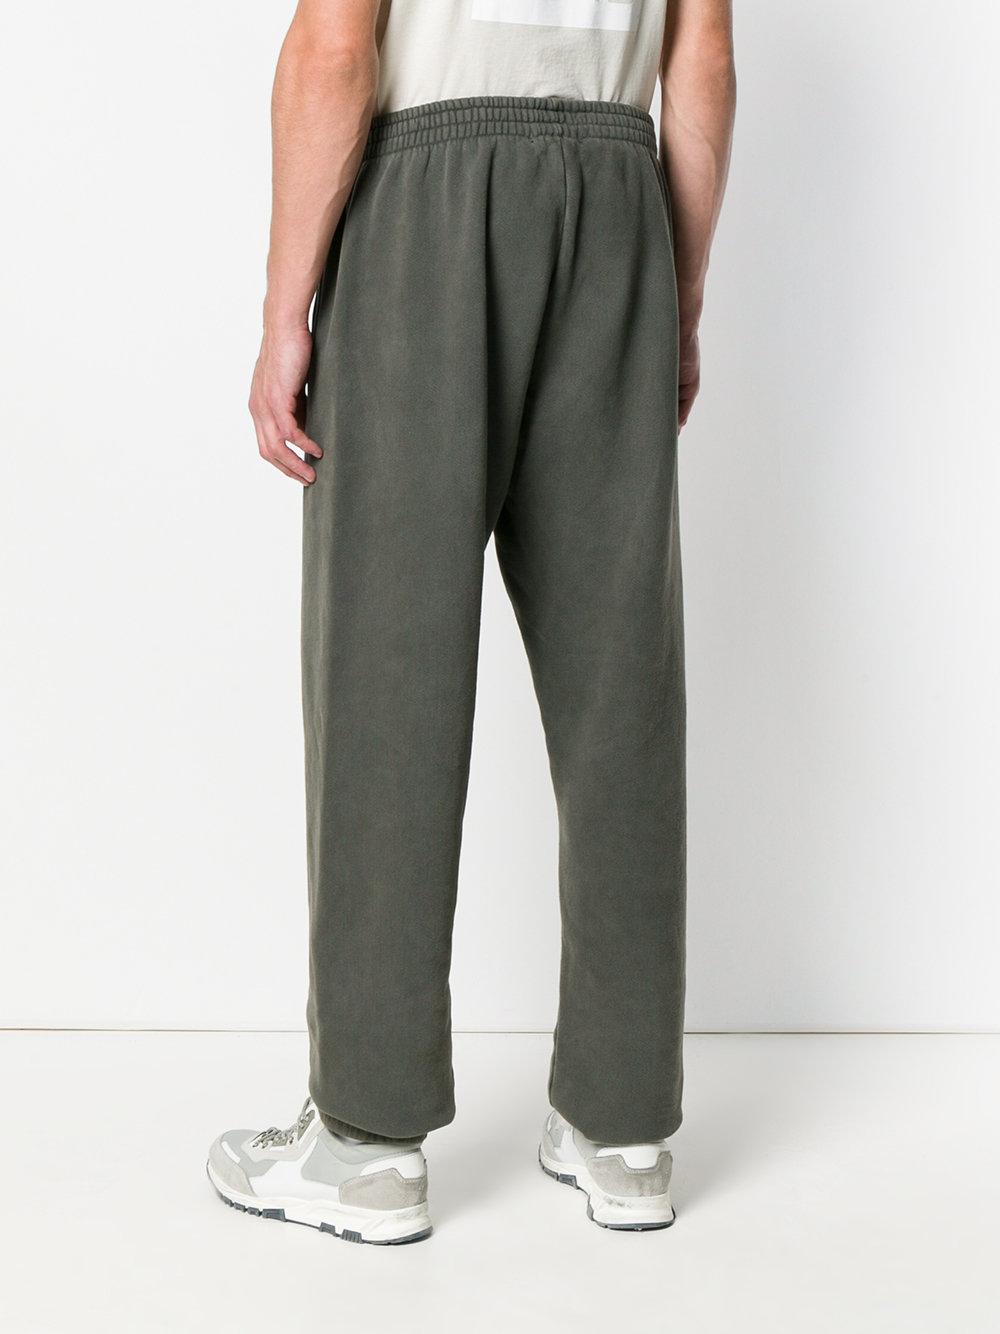 Yeezy Season 6 Sweatpants in Grey (Gray) for Men - Lyst